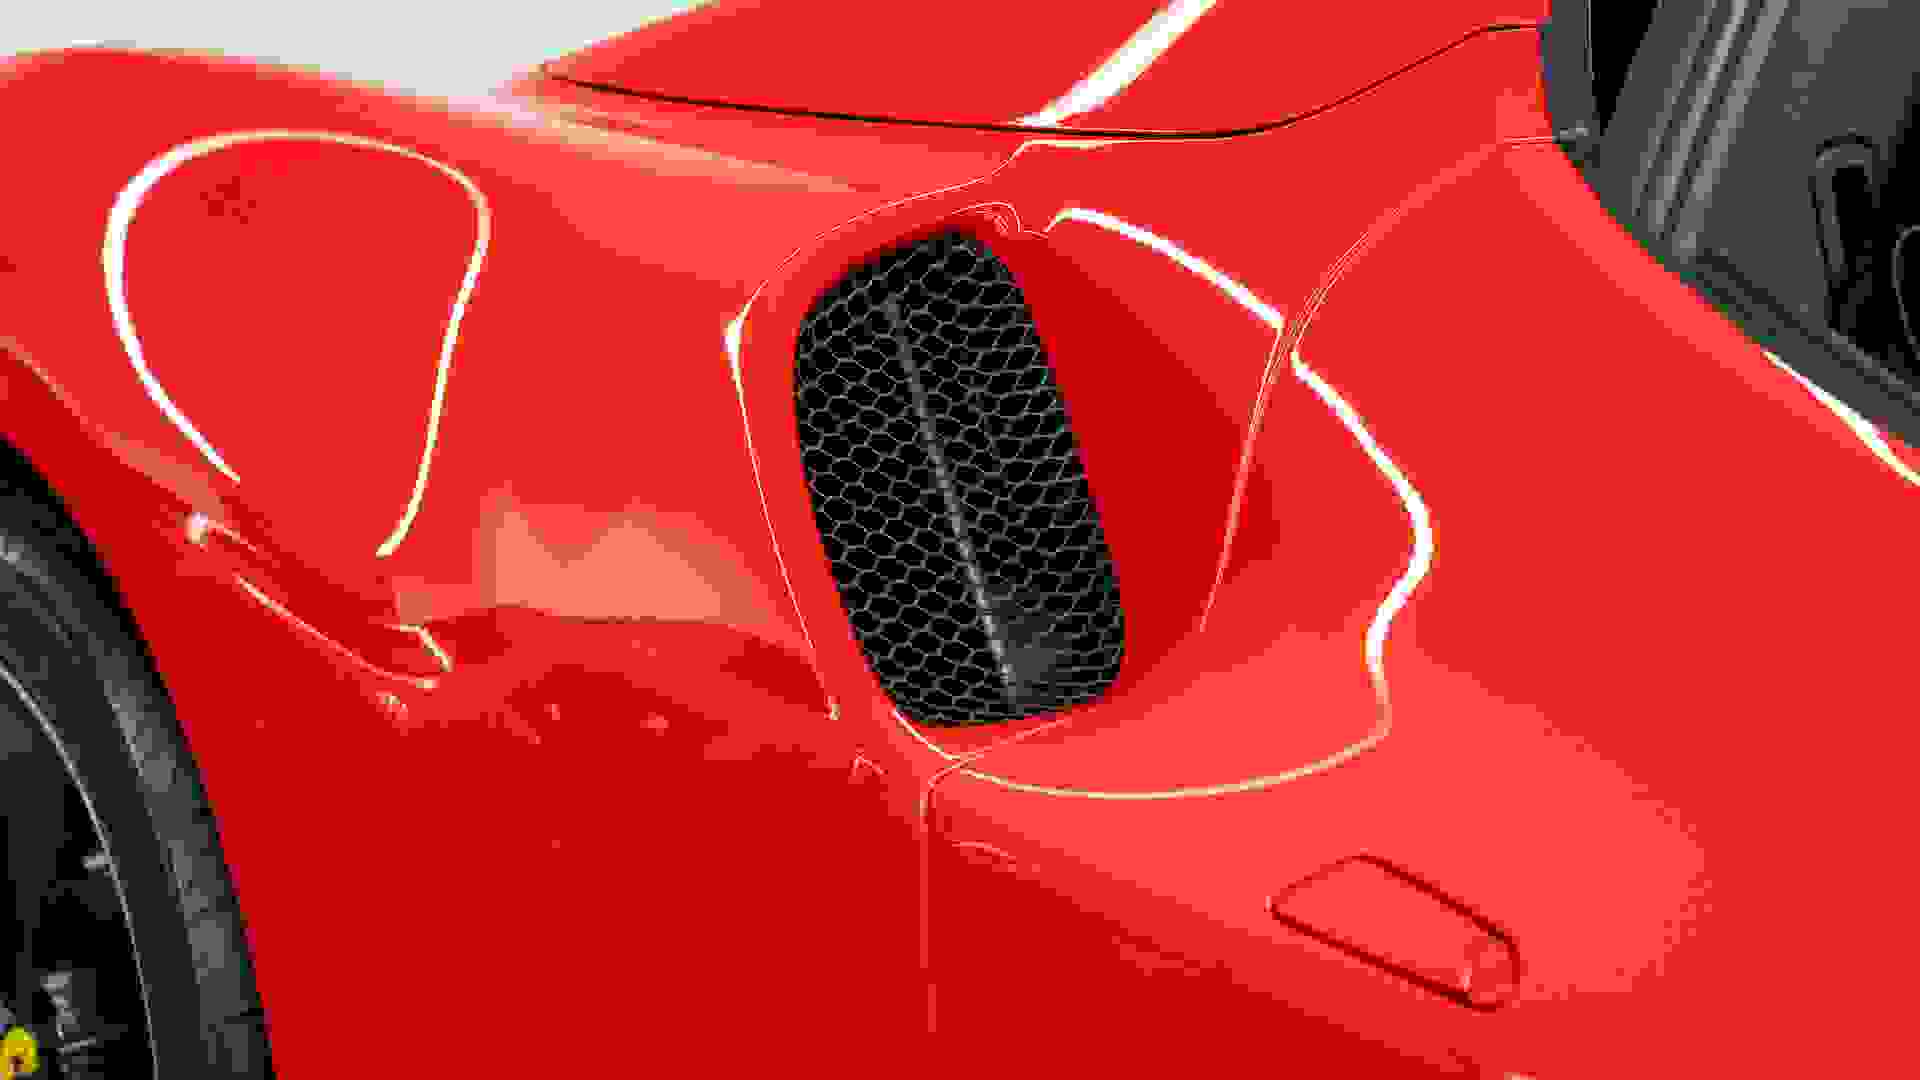 Ferrari 296 Photo 73cc255f-b503-49b7-9be0-7aa8274c7845.jpg